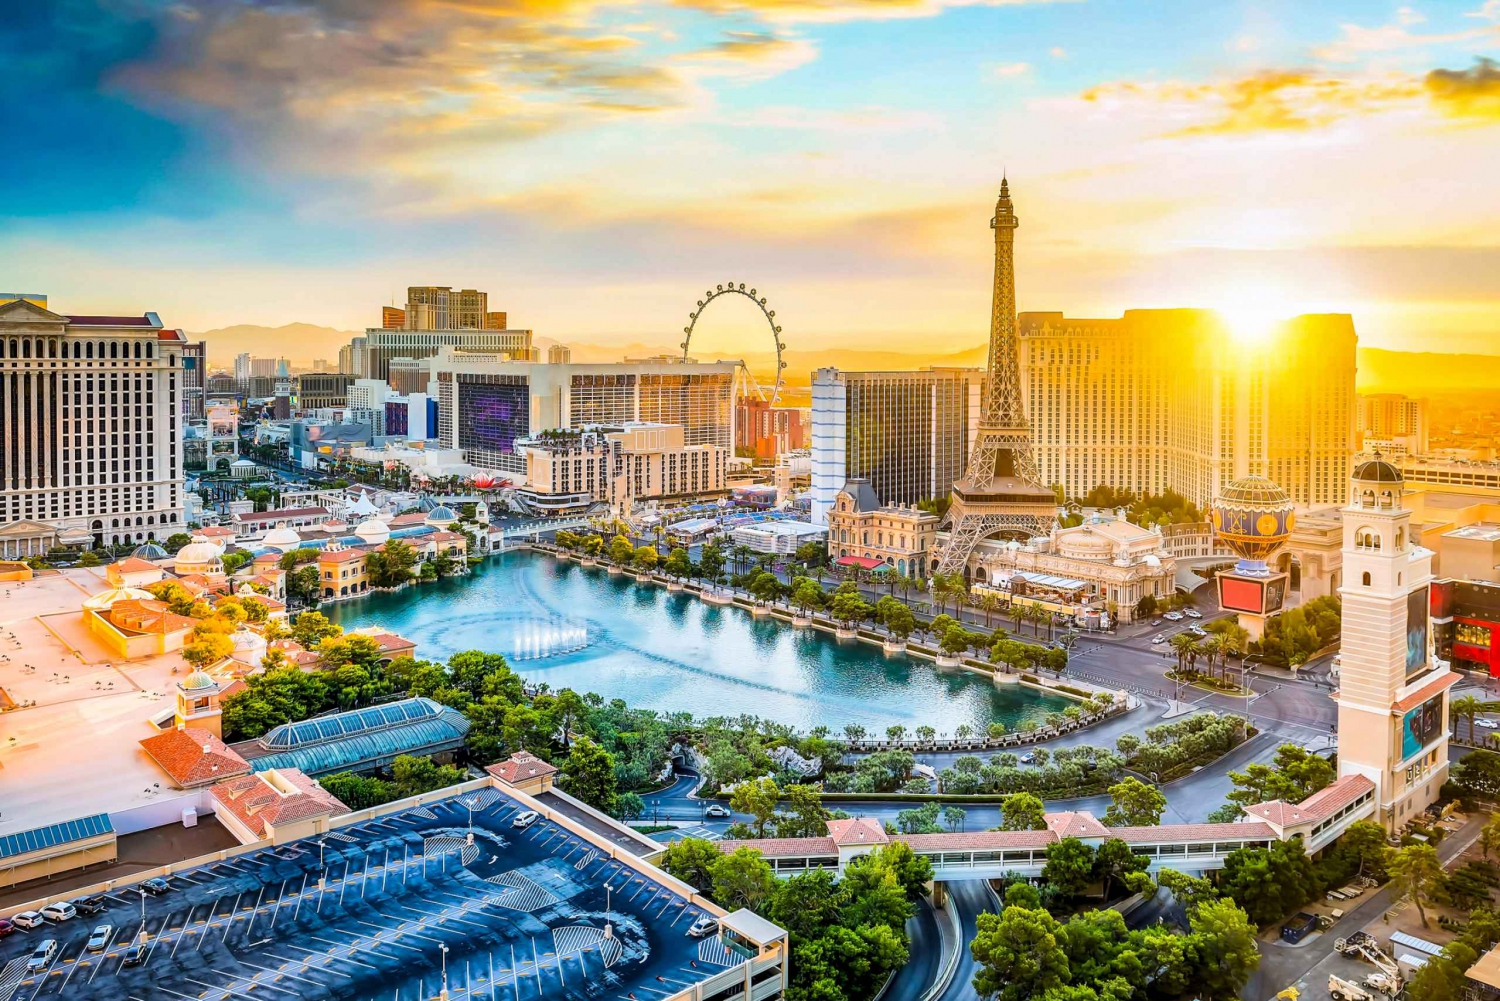 Las Vegas: Ingresso Plataforma de Observação da Torre Eiffel